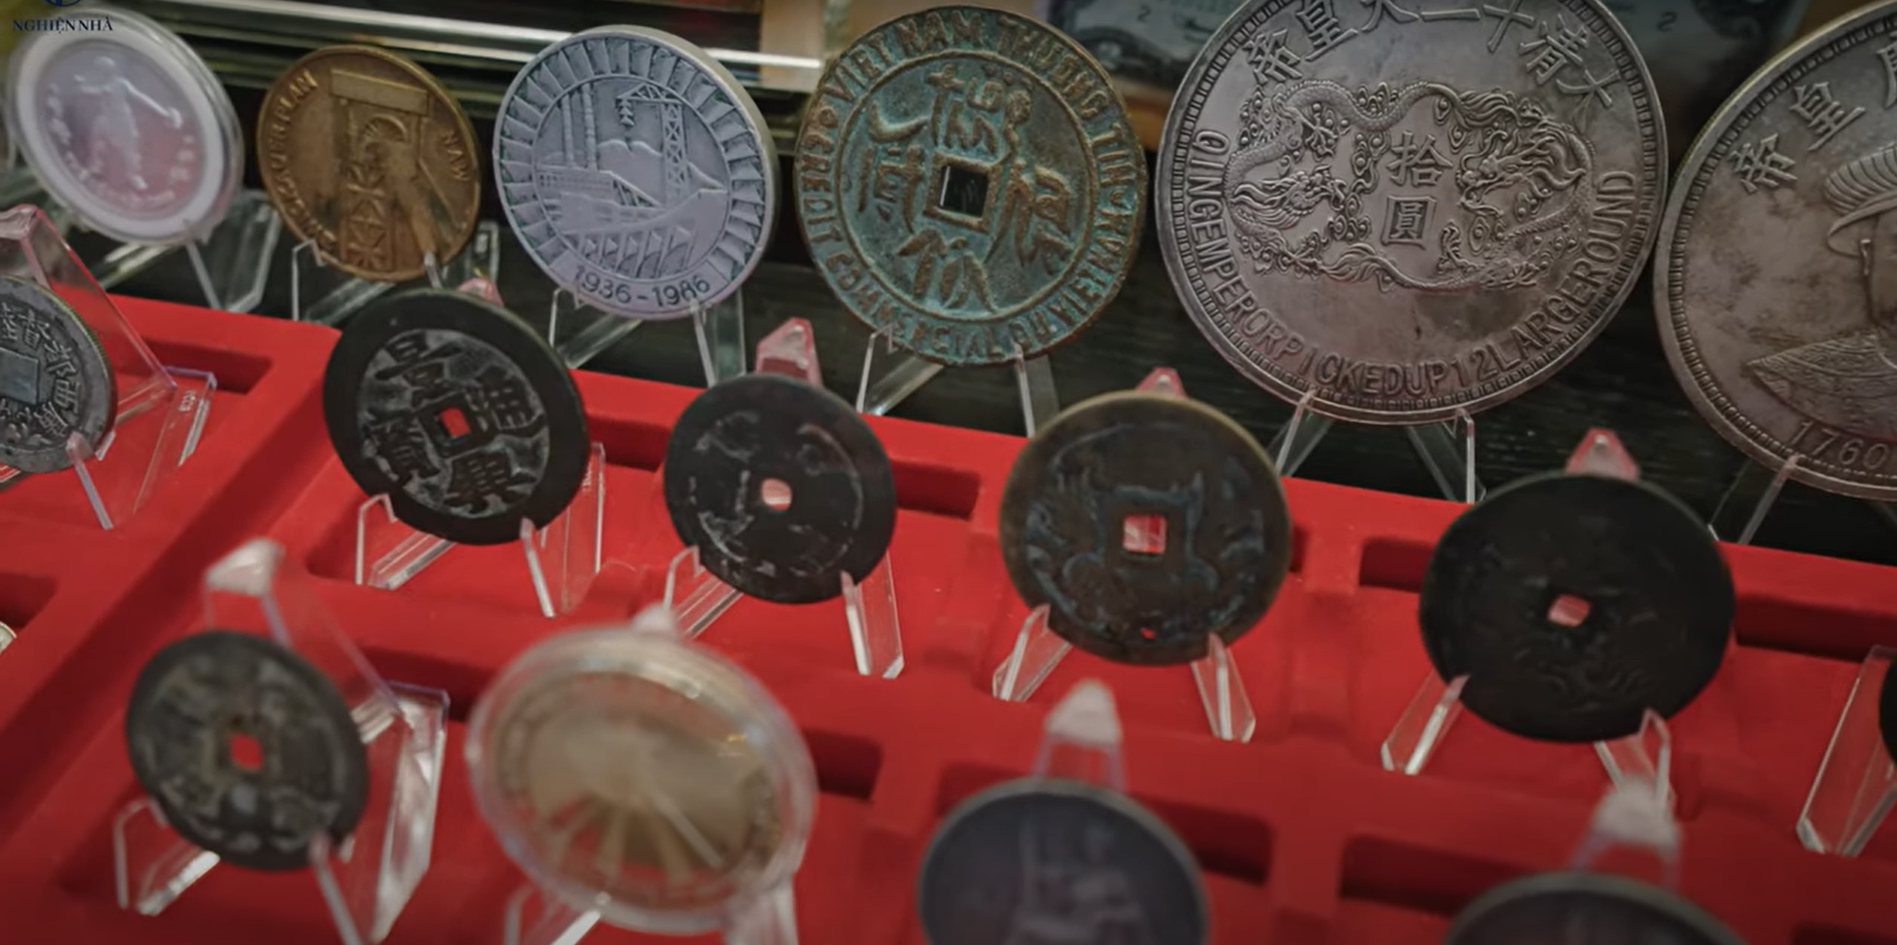 Căn biệt thự kim tiền của vua tiền tệ Hùng Bá: Tiền ‘dát’ từ ngoài cổng, choáng ngợp nhất là BST tiền cổ có loạt seri quý hiếm trị giá hơn 10 tỷ đồng - Ảnh 13.